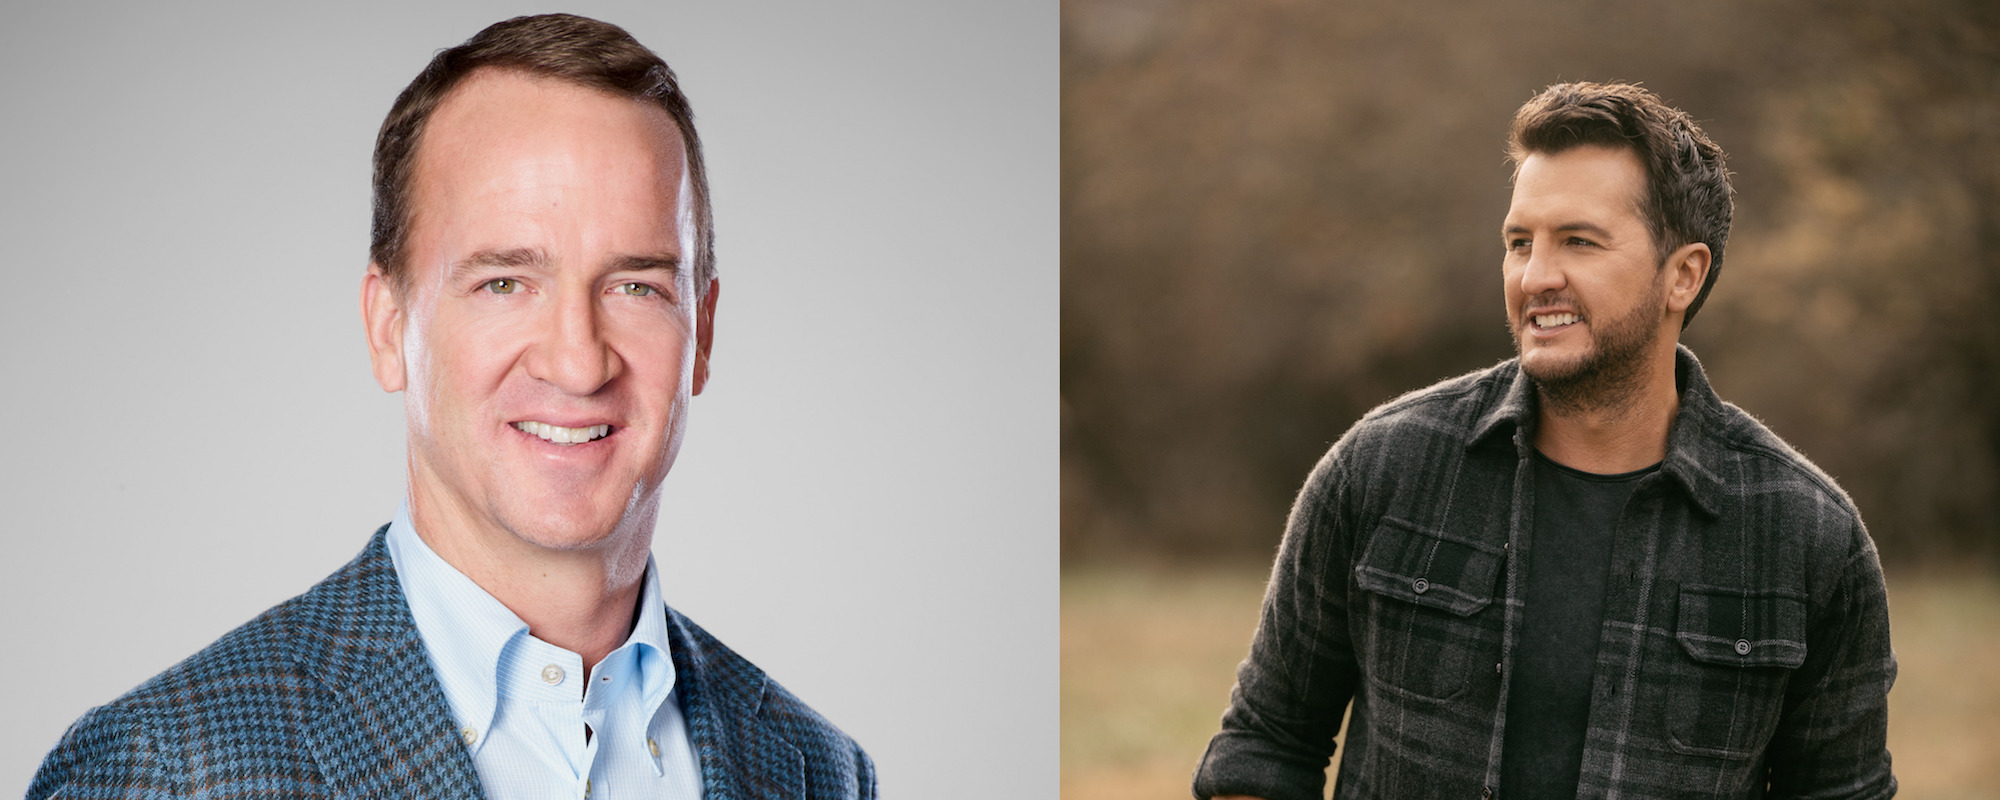 Peyton Manning, Luke Bryan to Host 2022 CMA Awards